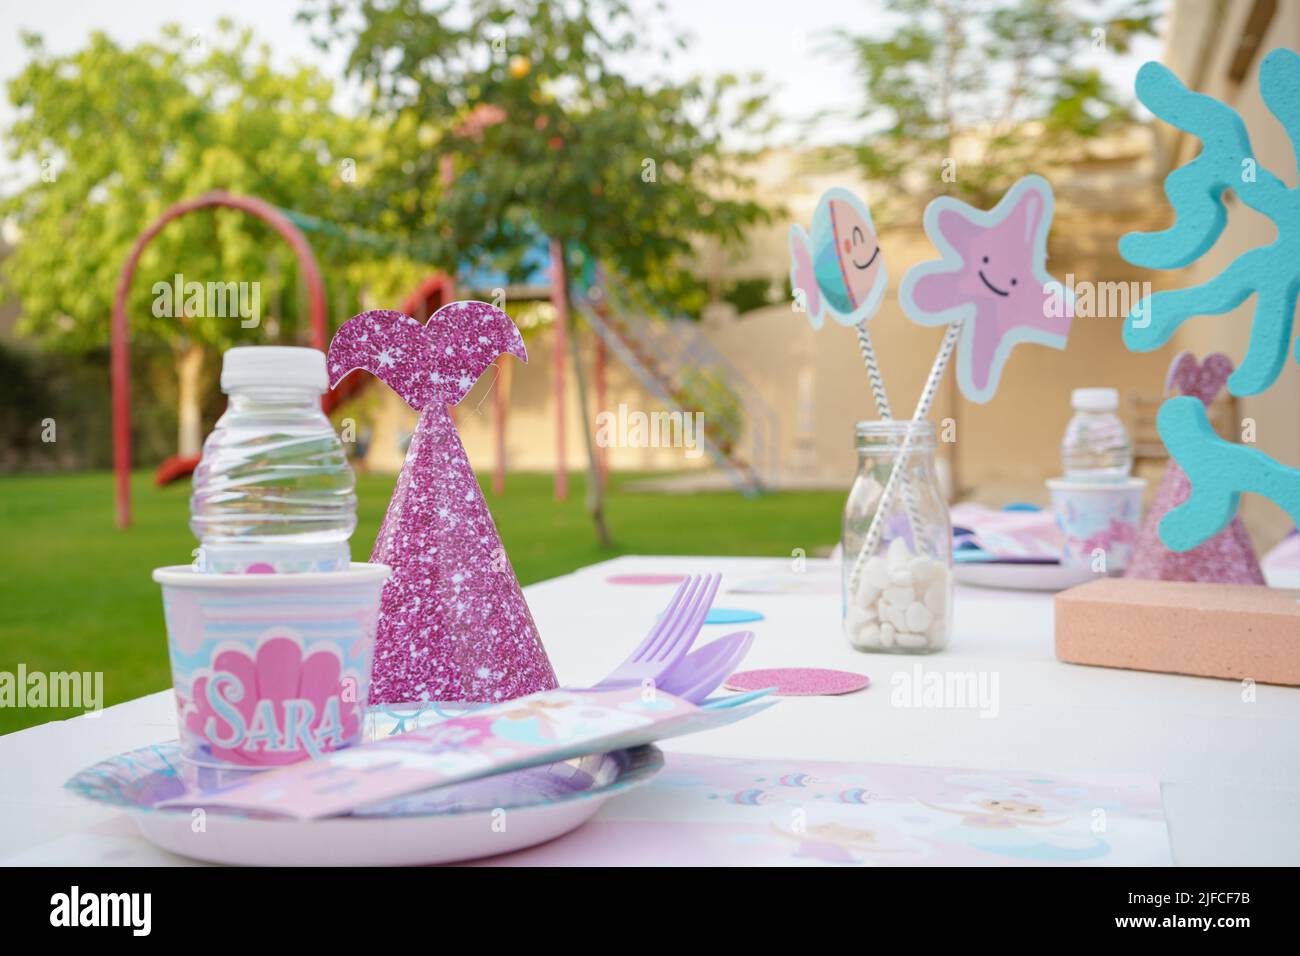 Table de bonbons : petits gâteaux, biscuits et desserts ; décoration à thème pour la fête d'anniversaire des enfants de la sirène. Banque D'Images